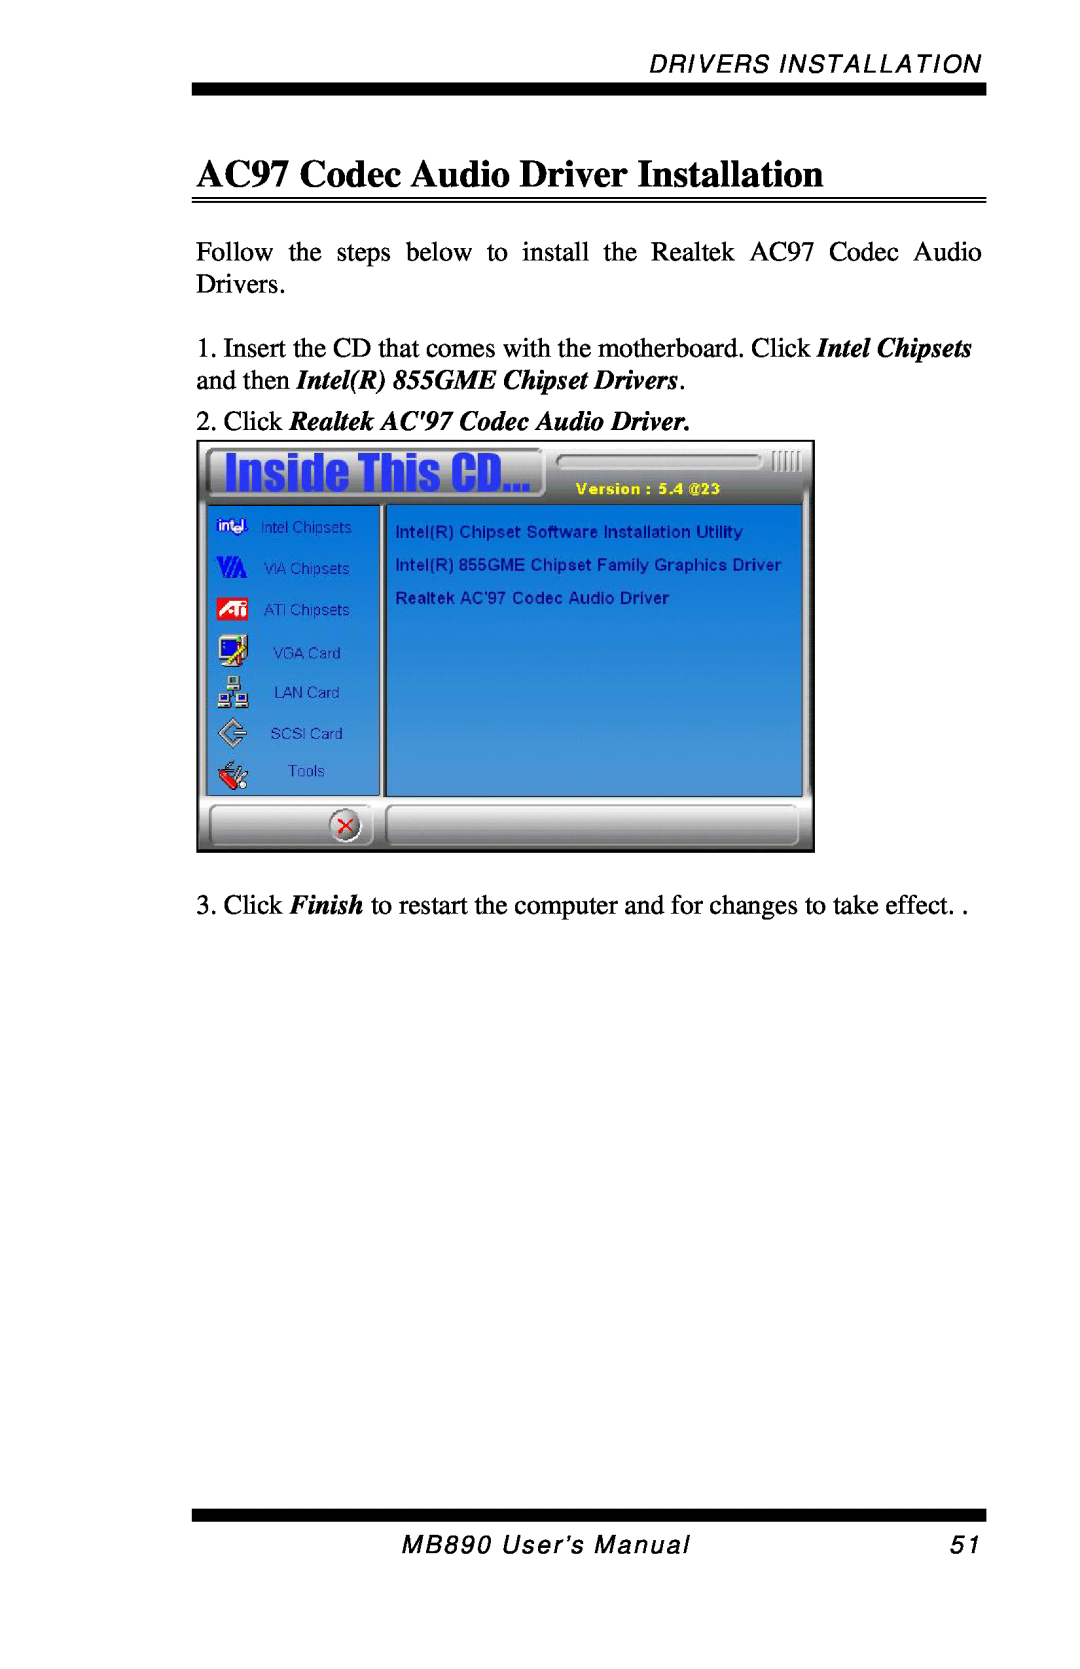 Intel MB890 user manual AC97 Codec Audio Driver Installation, Click Realtek AC97 Codec Audio Driver 